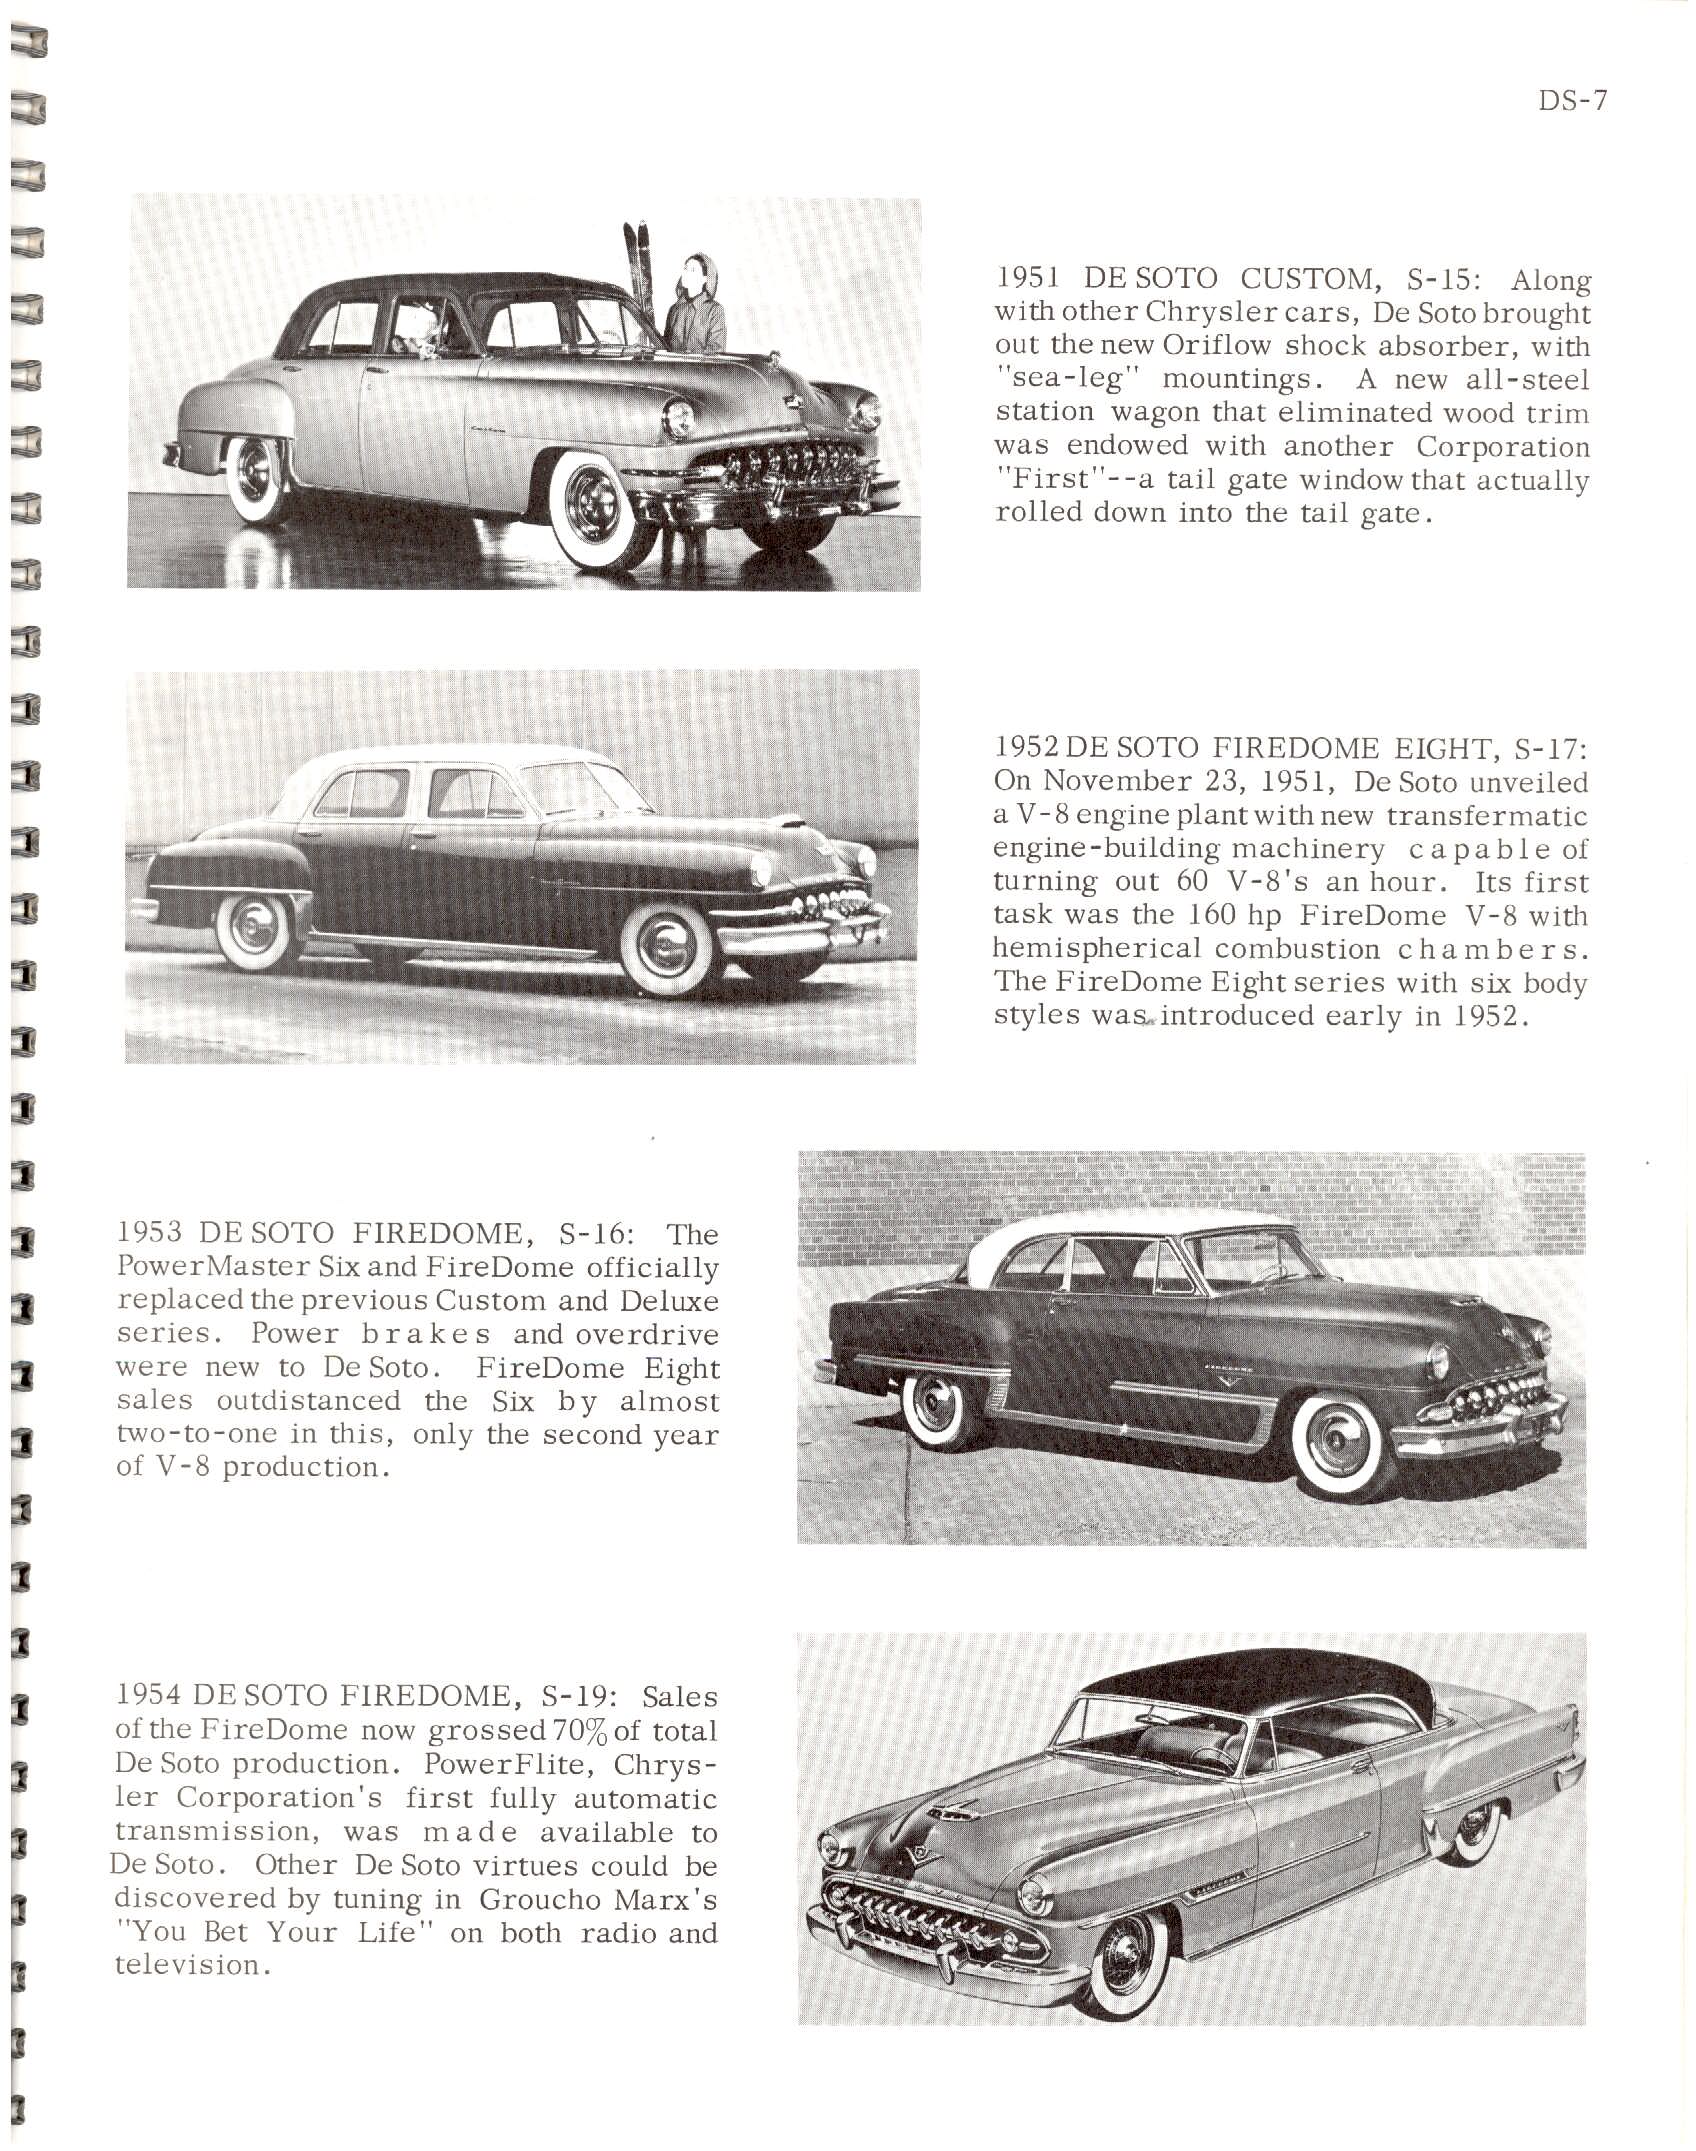 1966-History_Of_Chrysler_Cars-DS07